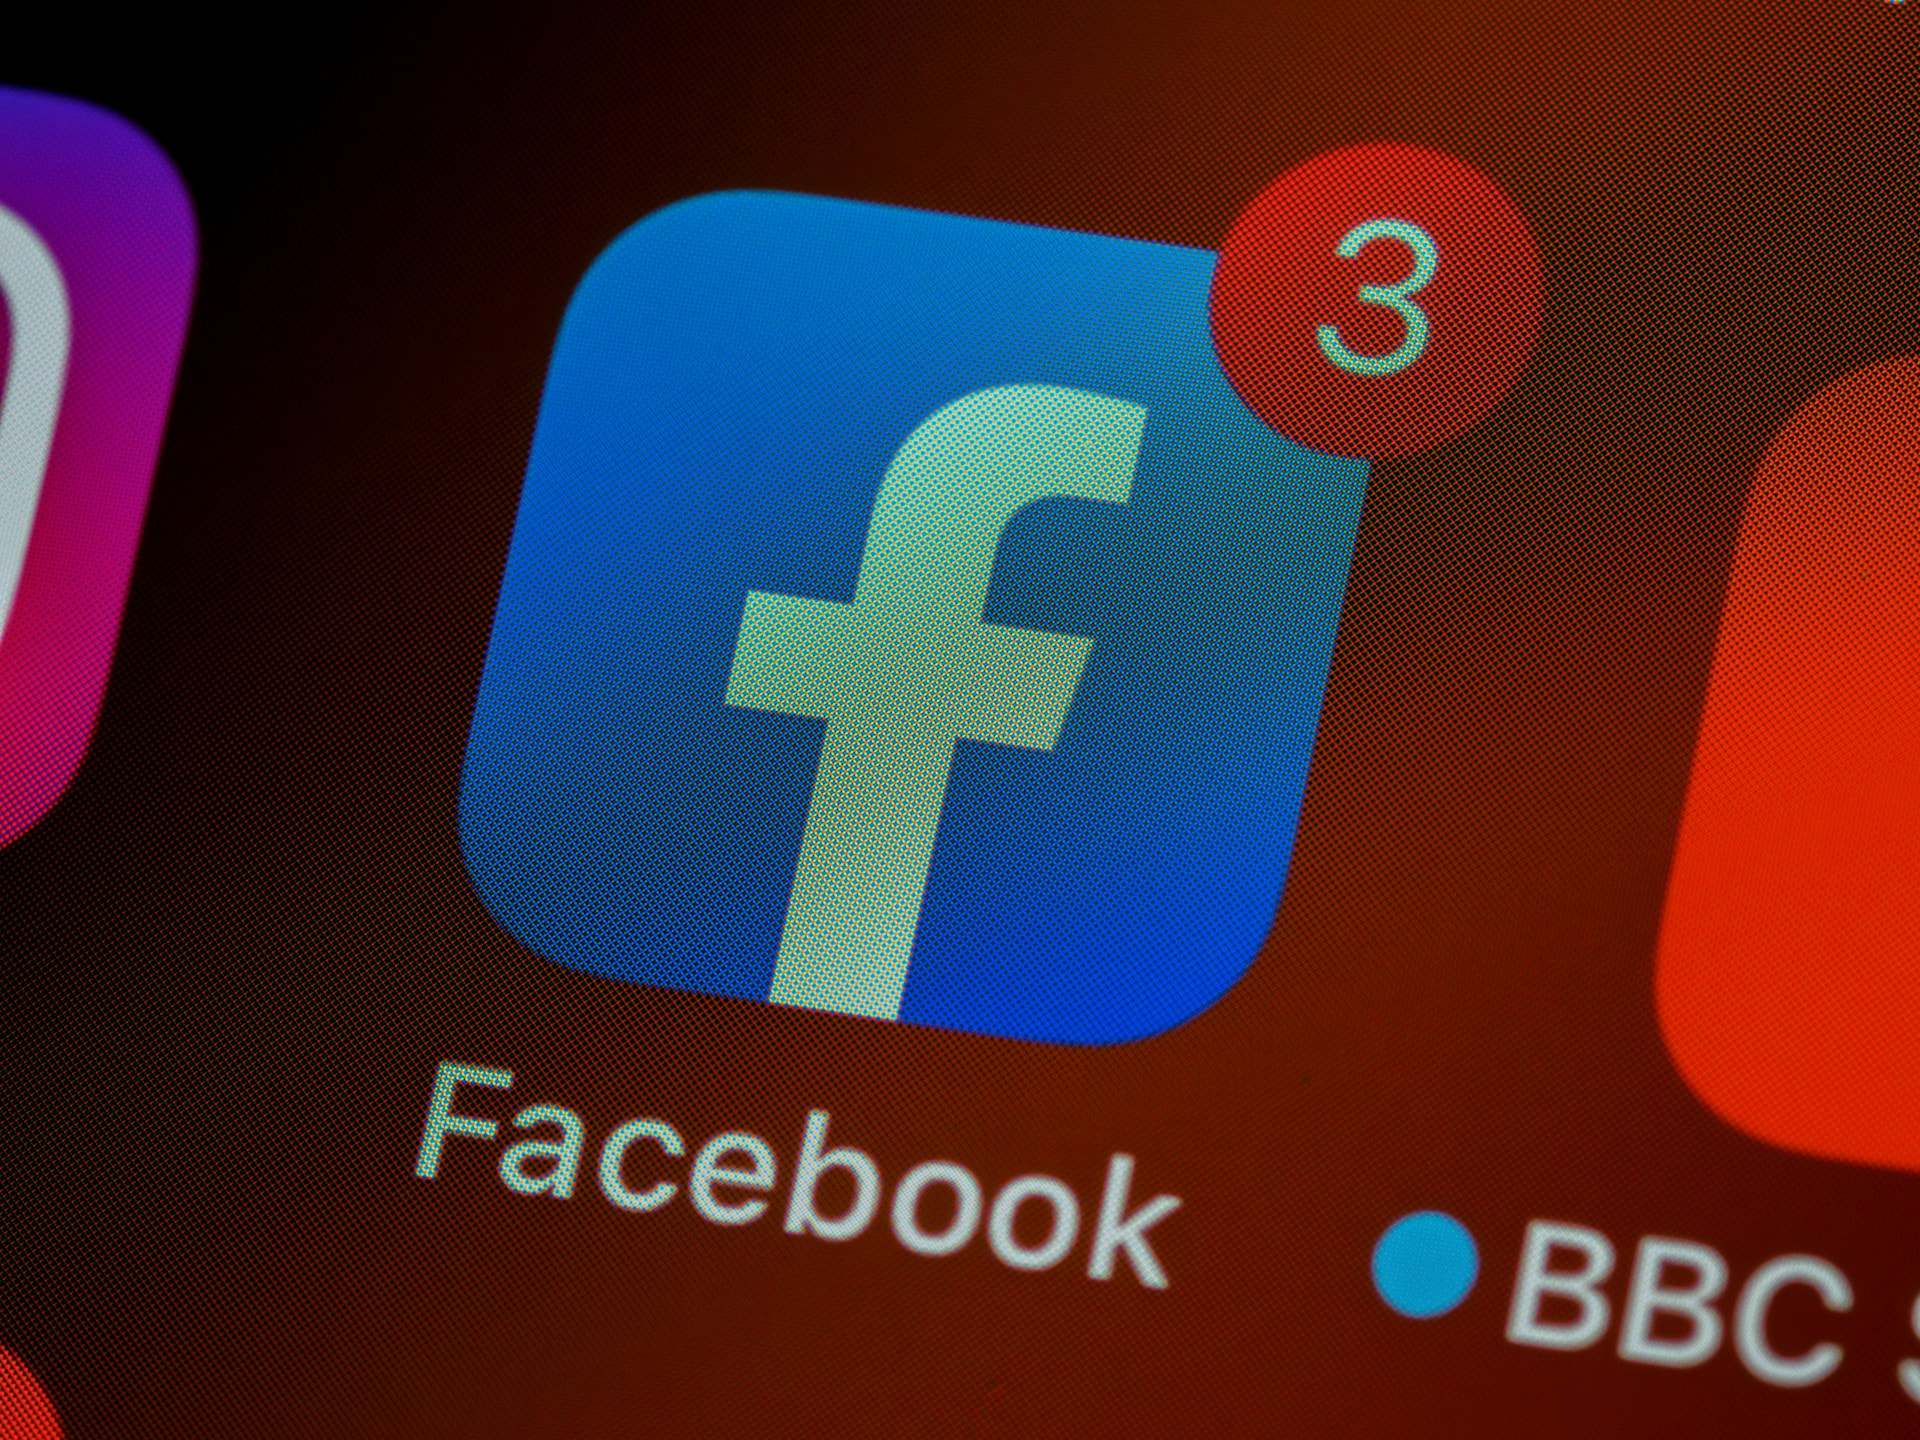 Facebook-Icon auf einem Smartphone-Display